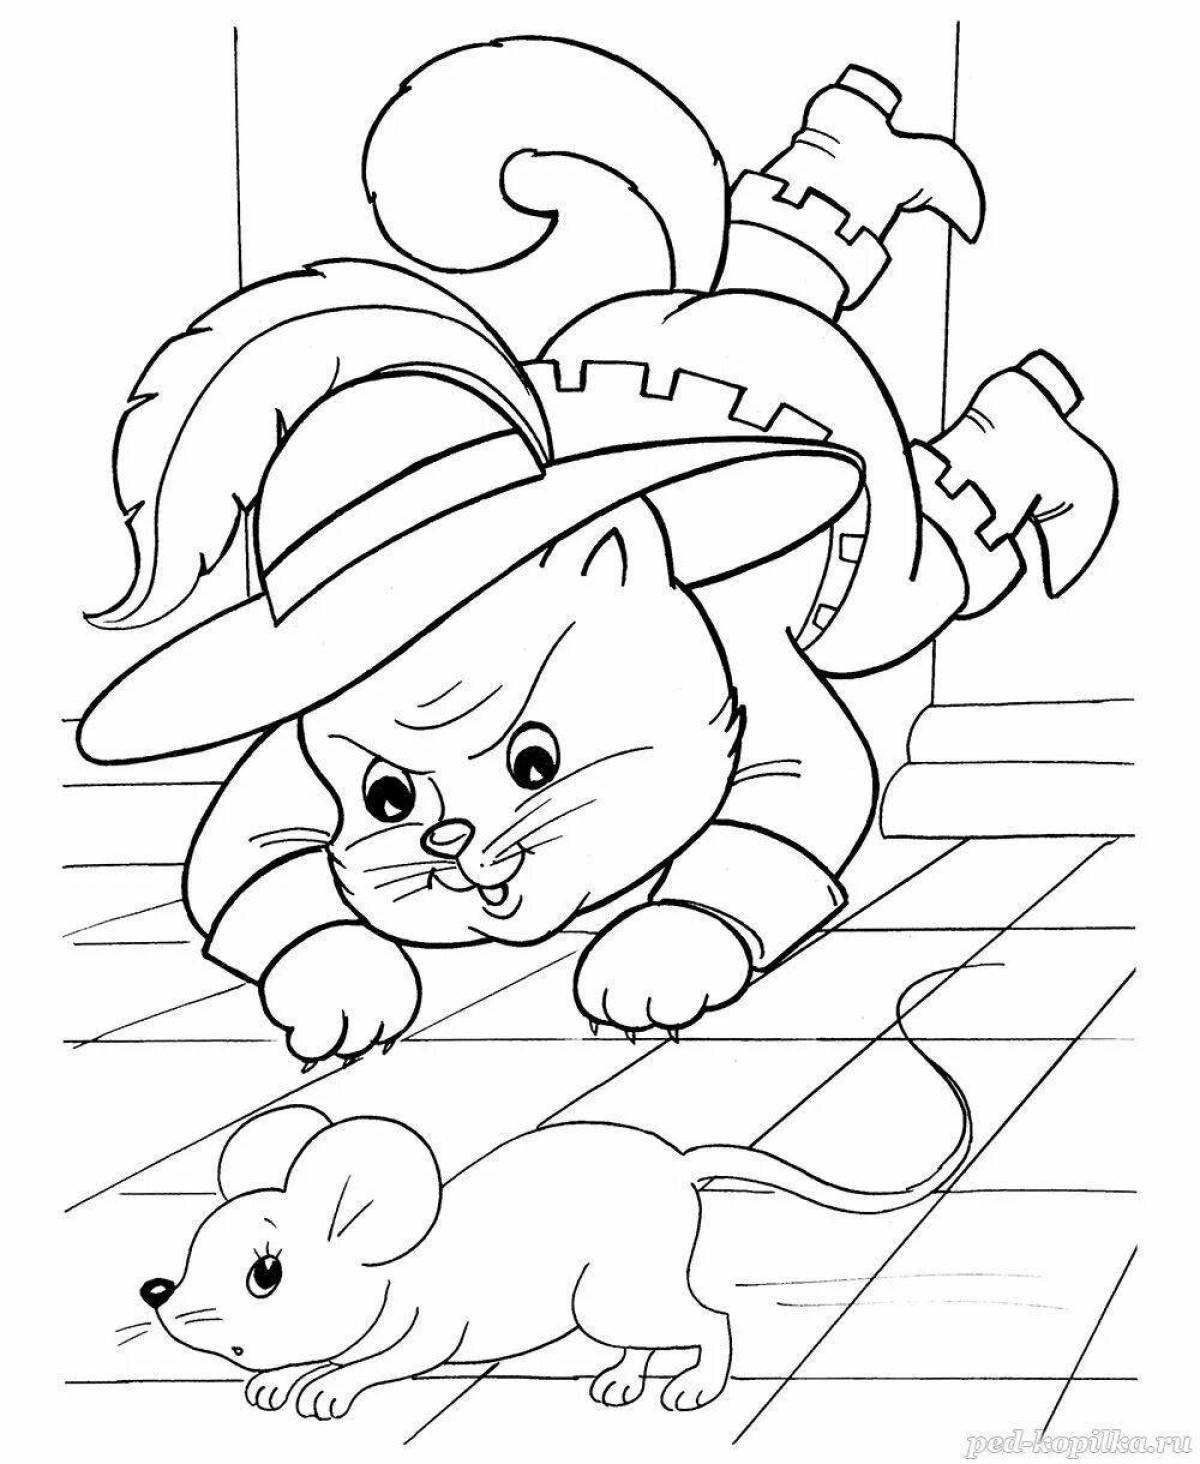 Fairy cat coloring book